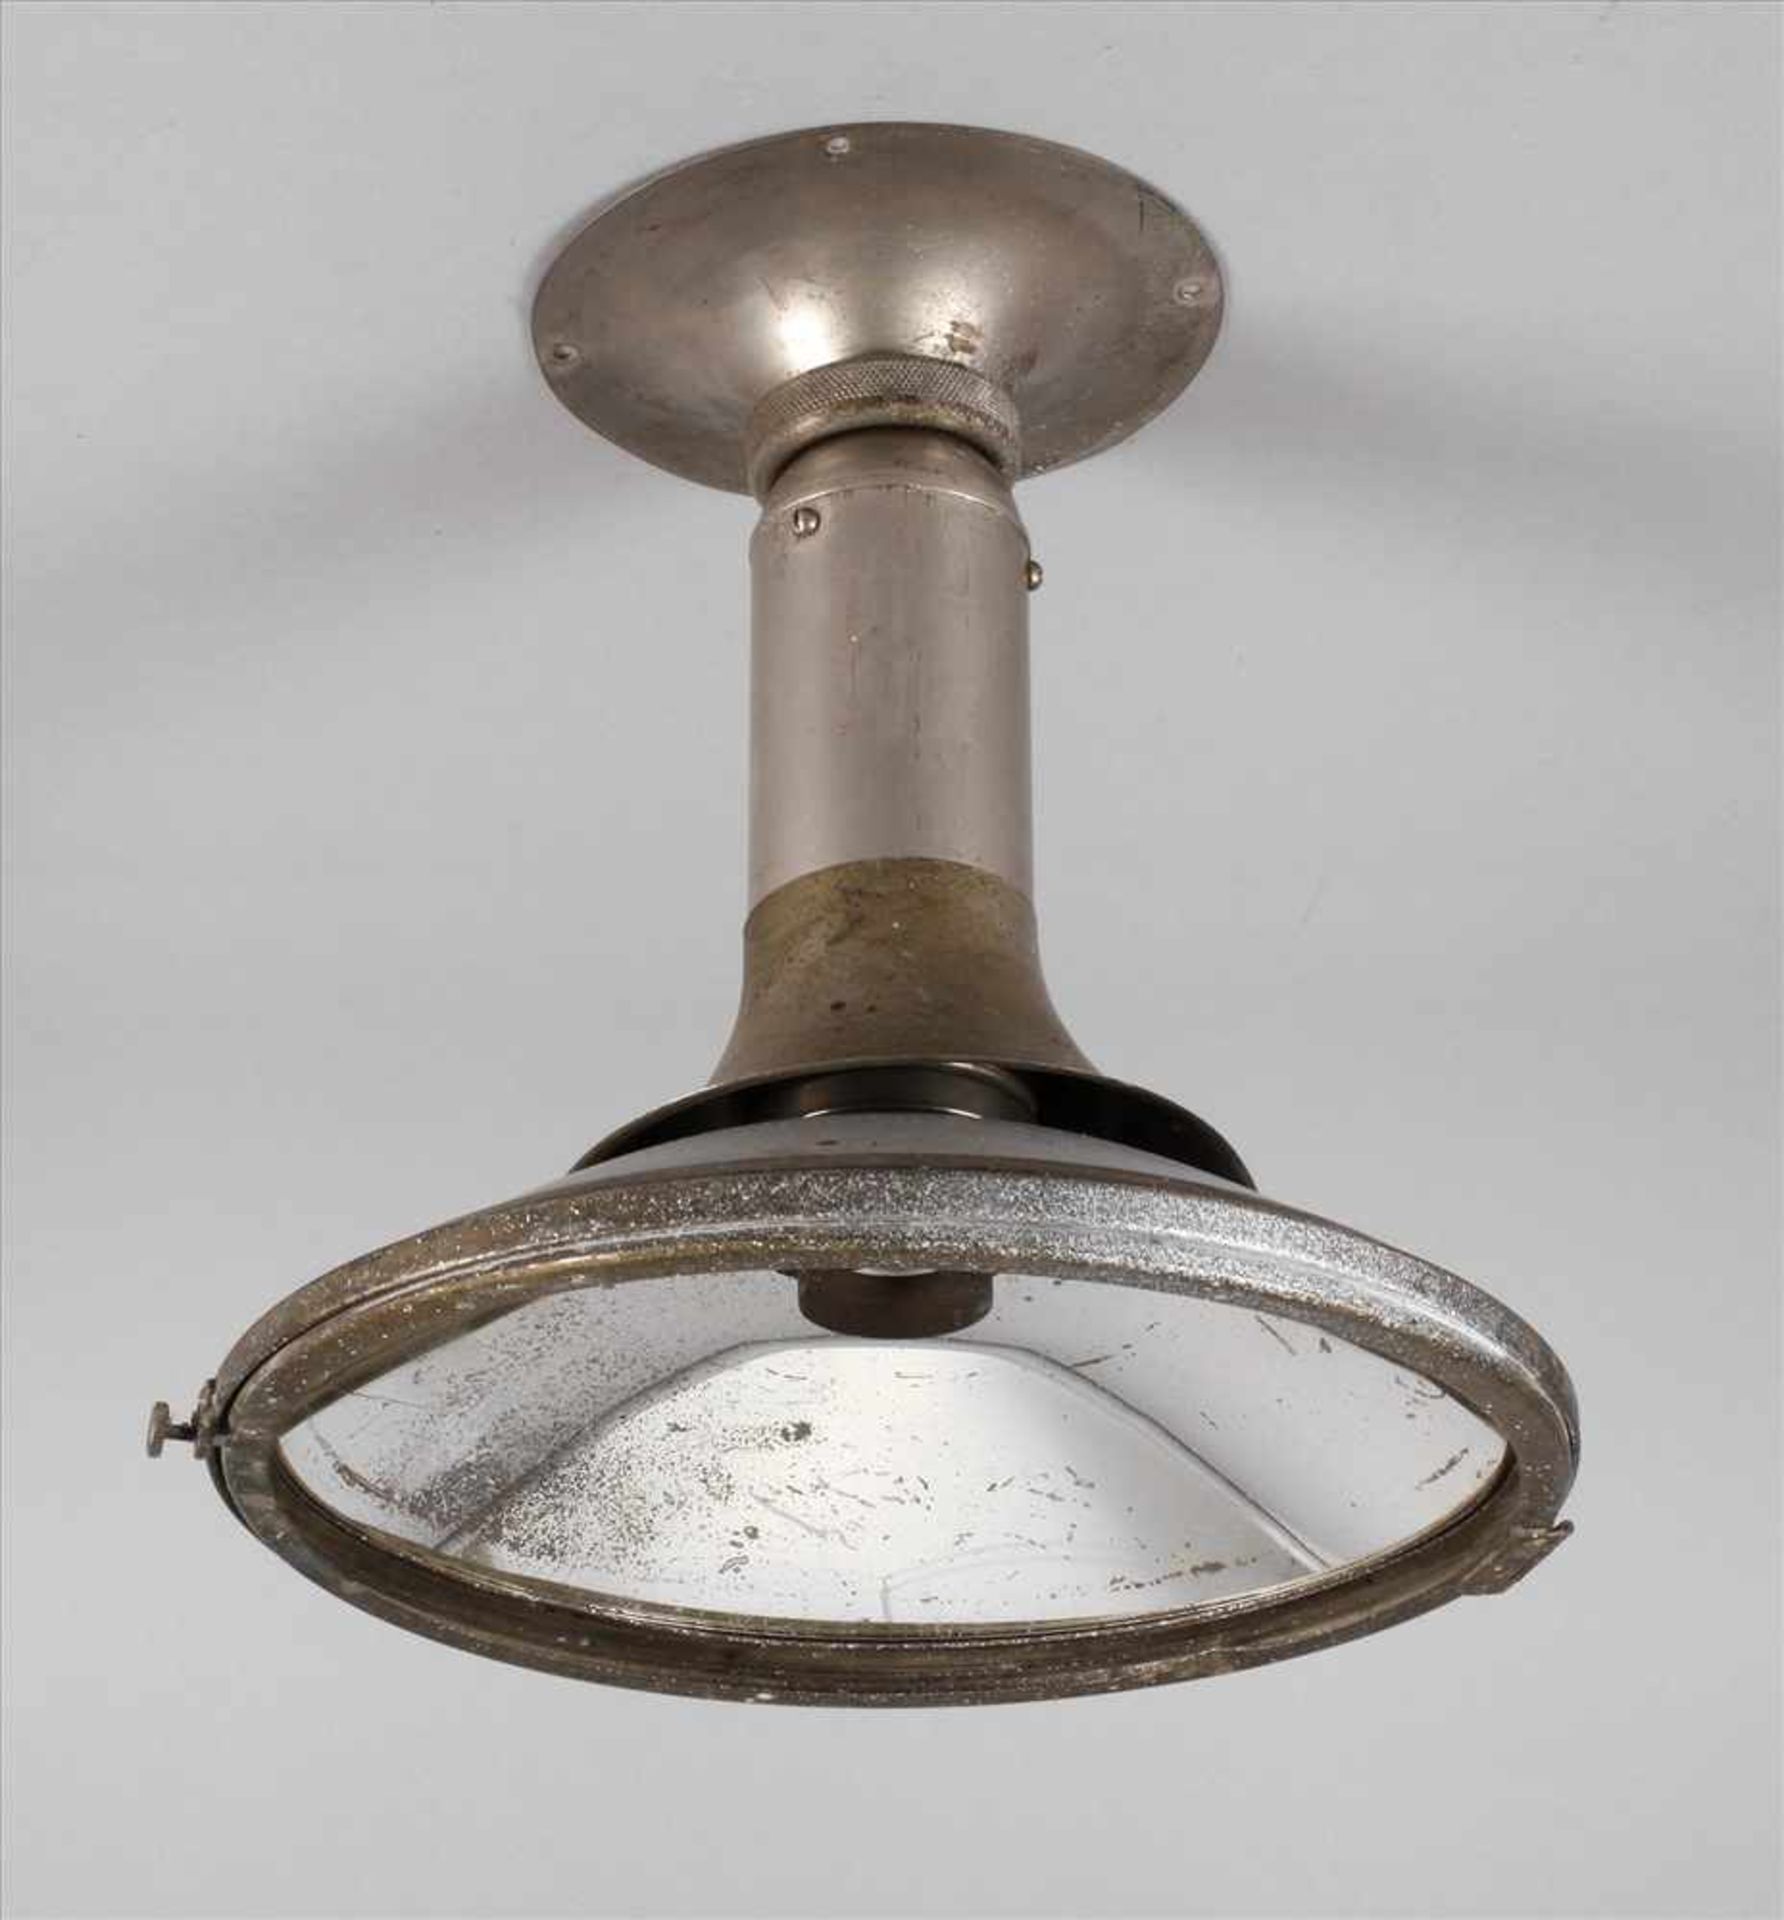 Reflektorlampe Carl Zeiss Jenaungemarkt, 1920er Jahre, Metall vernickelt, Hohlspiegel-Reflektor